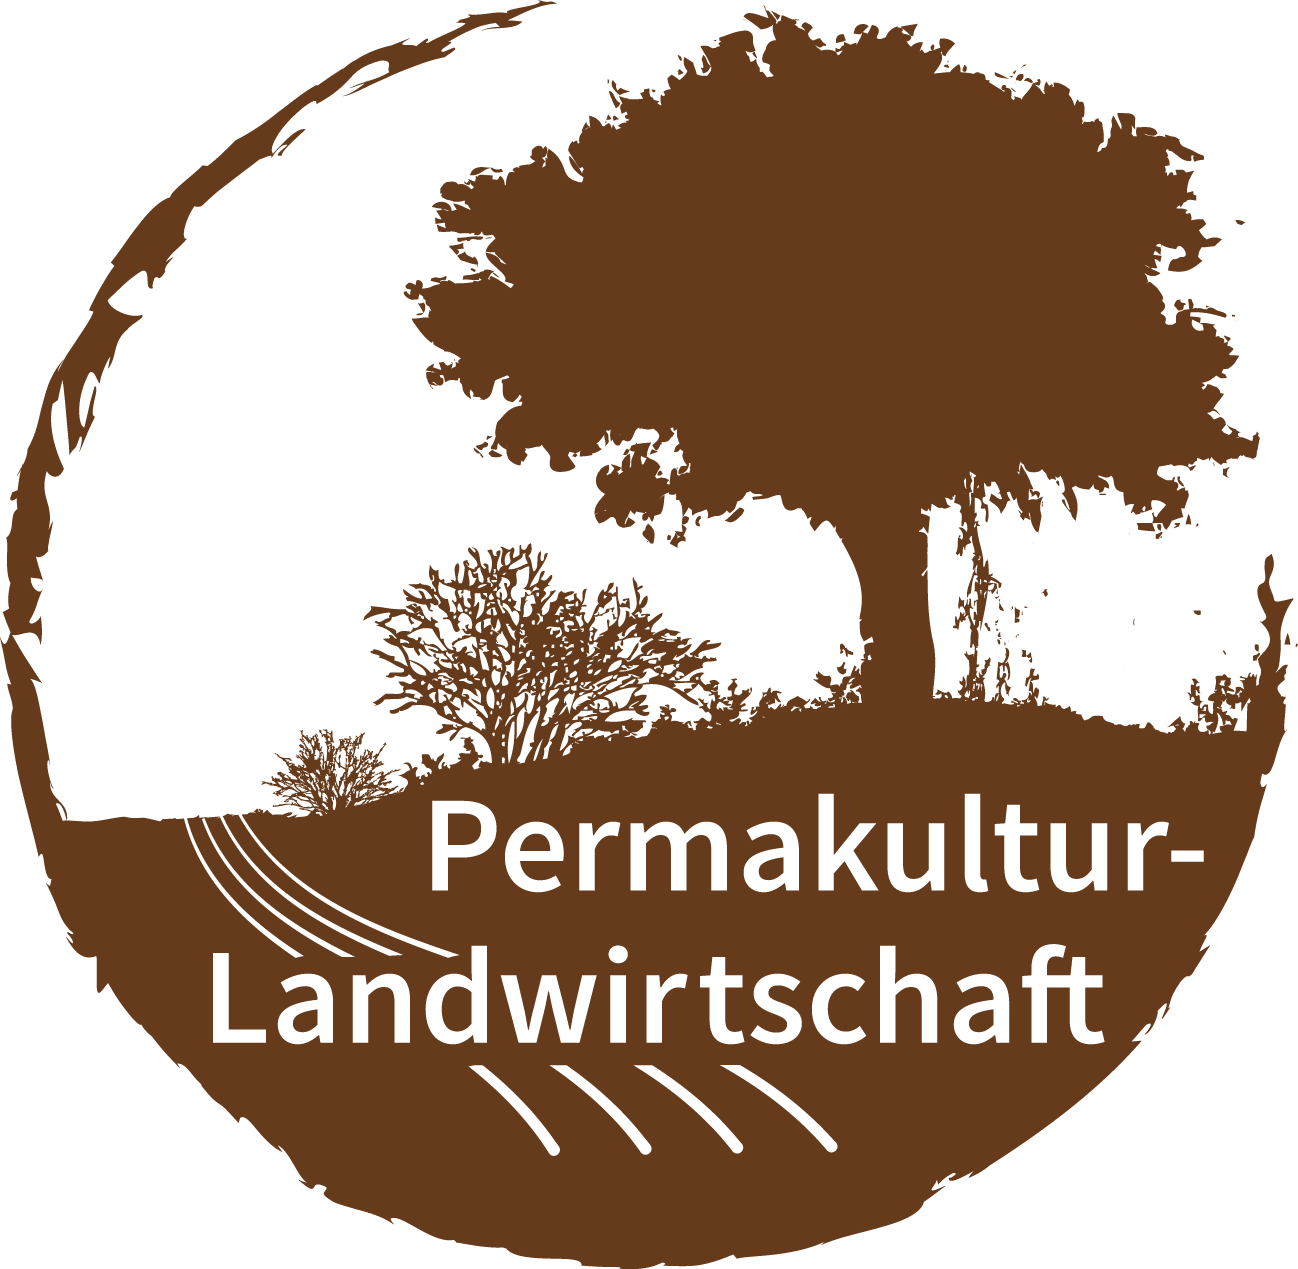 (c) Permakultur-landwirtschaft.org